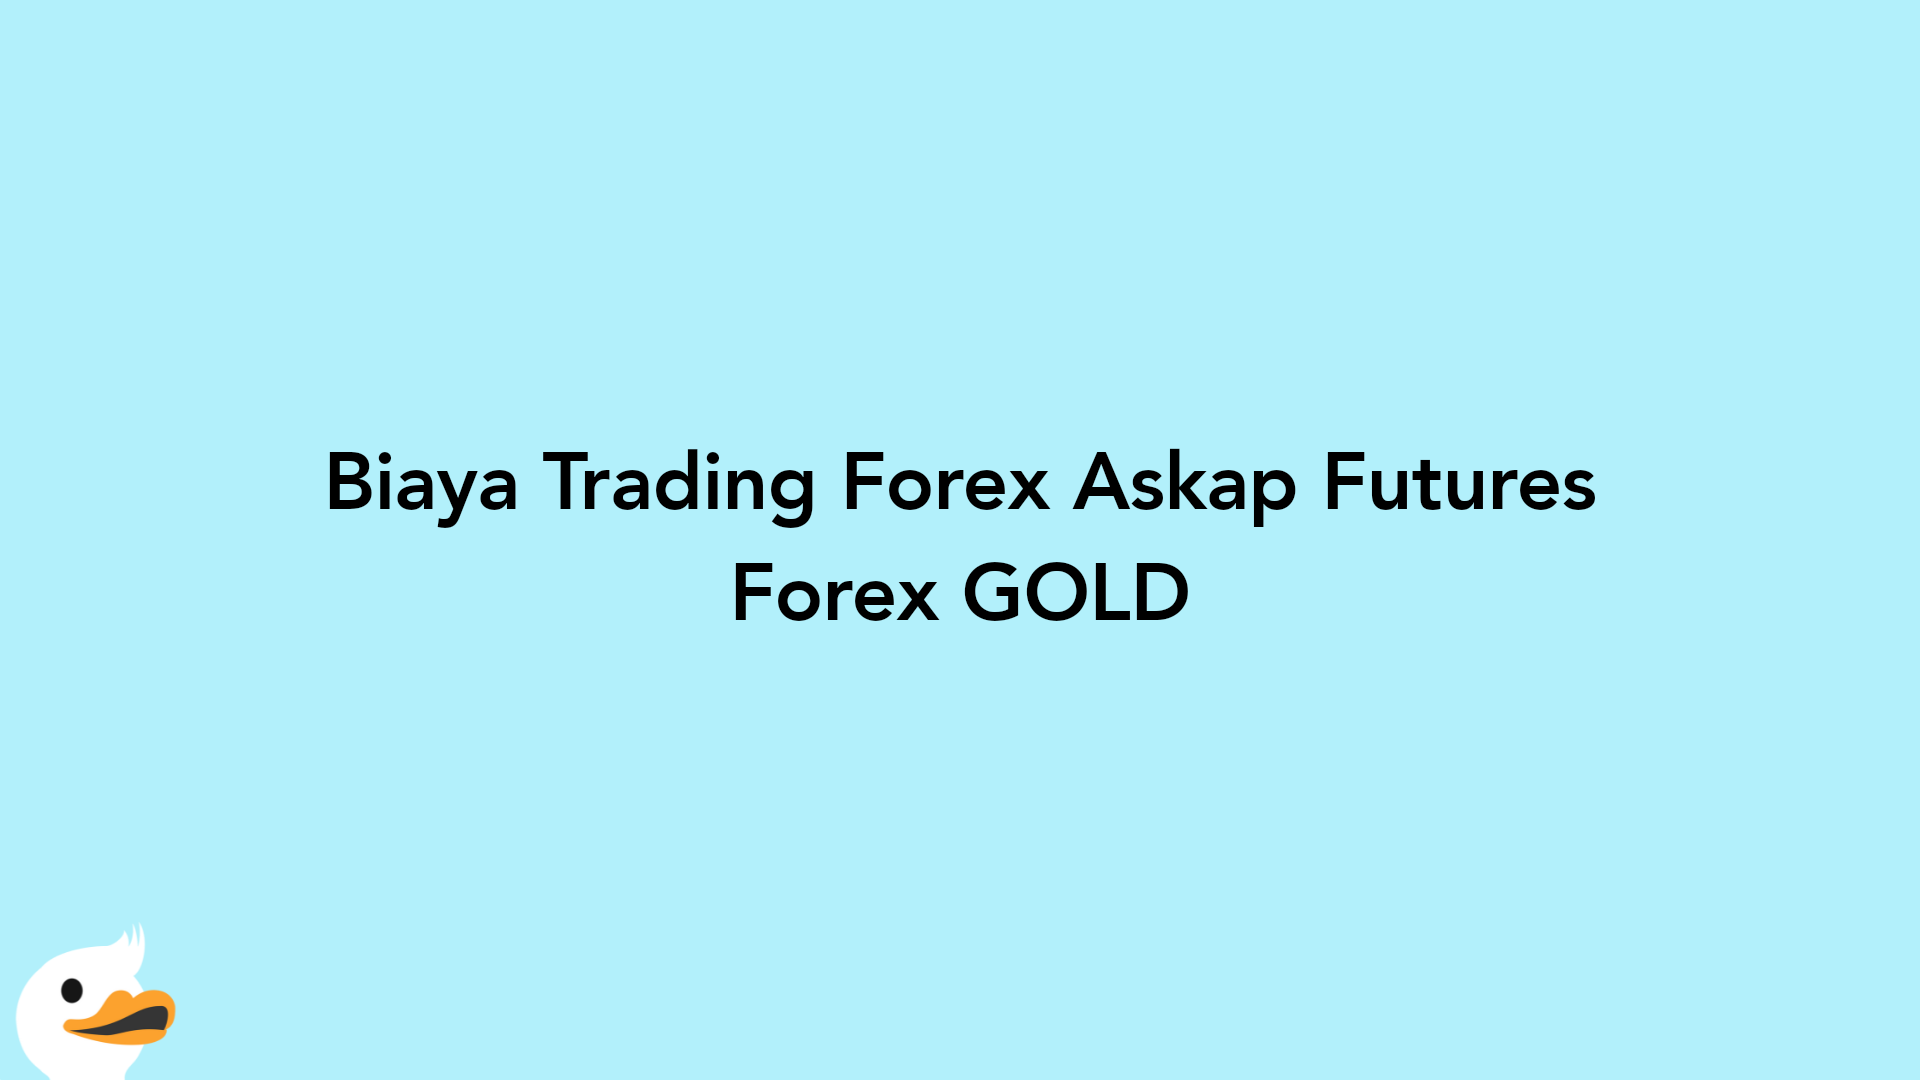 Biaya Trading Forex Askap Futures Forex GOLD